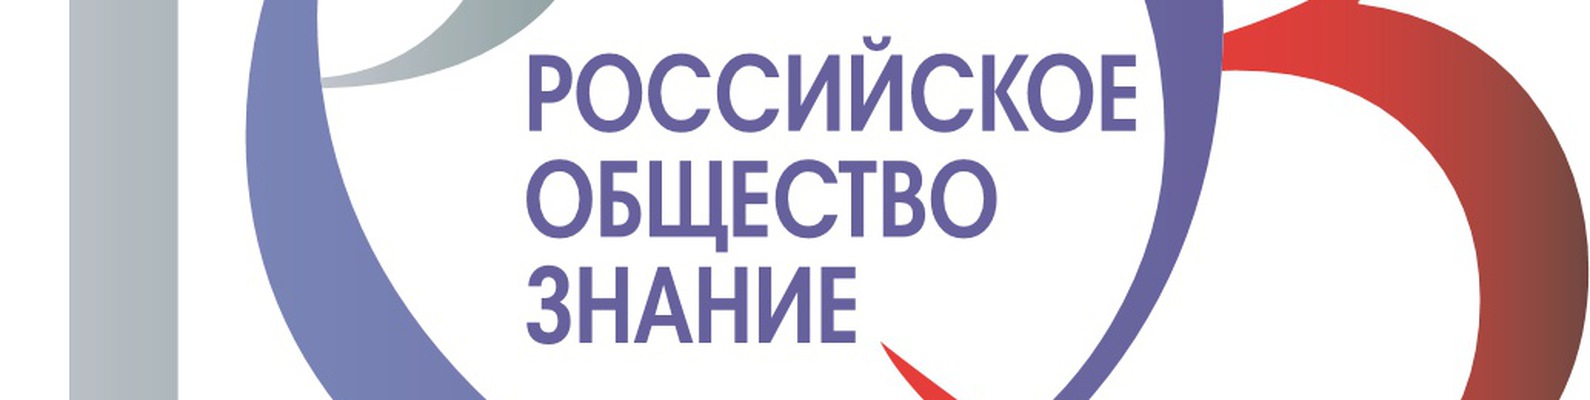 Работник общества знание. Российское общество знание. Российское общество знан е. Российское общество знание эмблема. Всероссийское общество знание логотип.